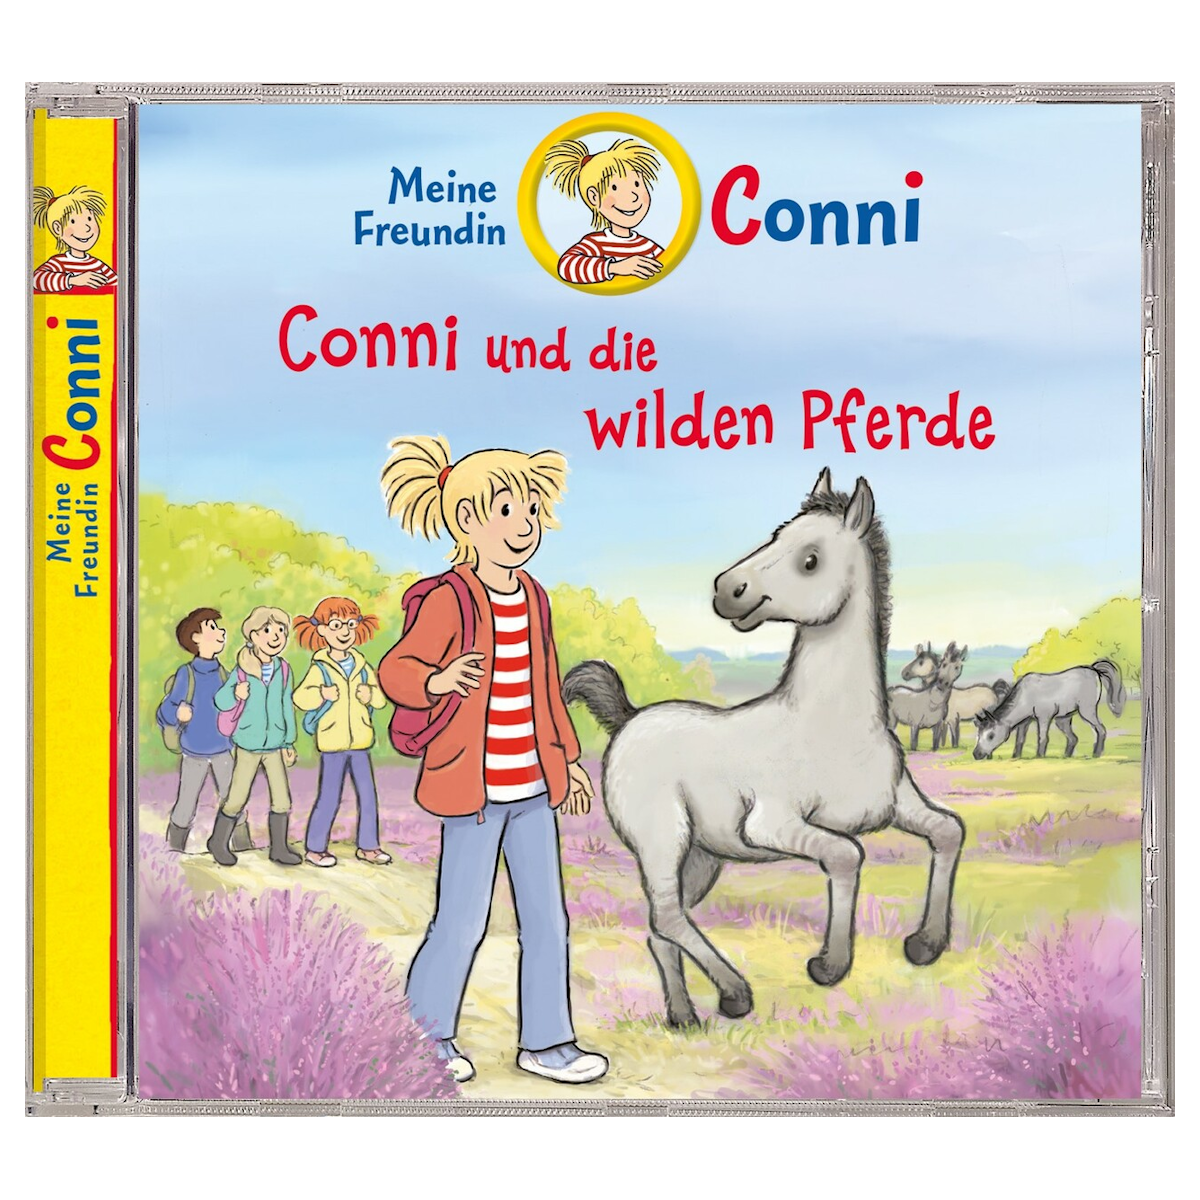 Neues Ponyabenteuer für Conni-Fans!